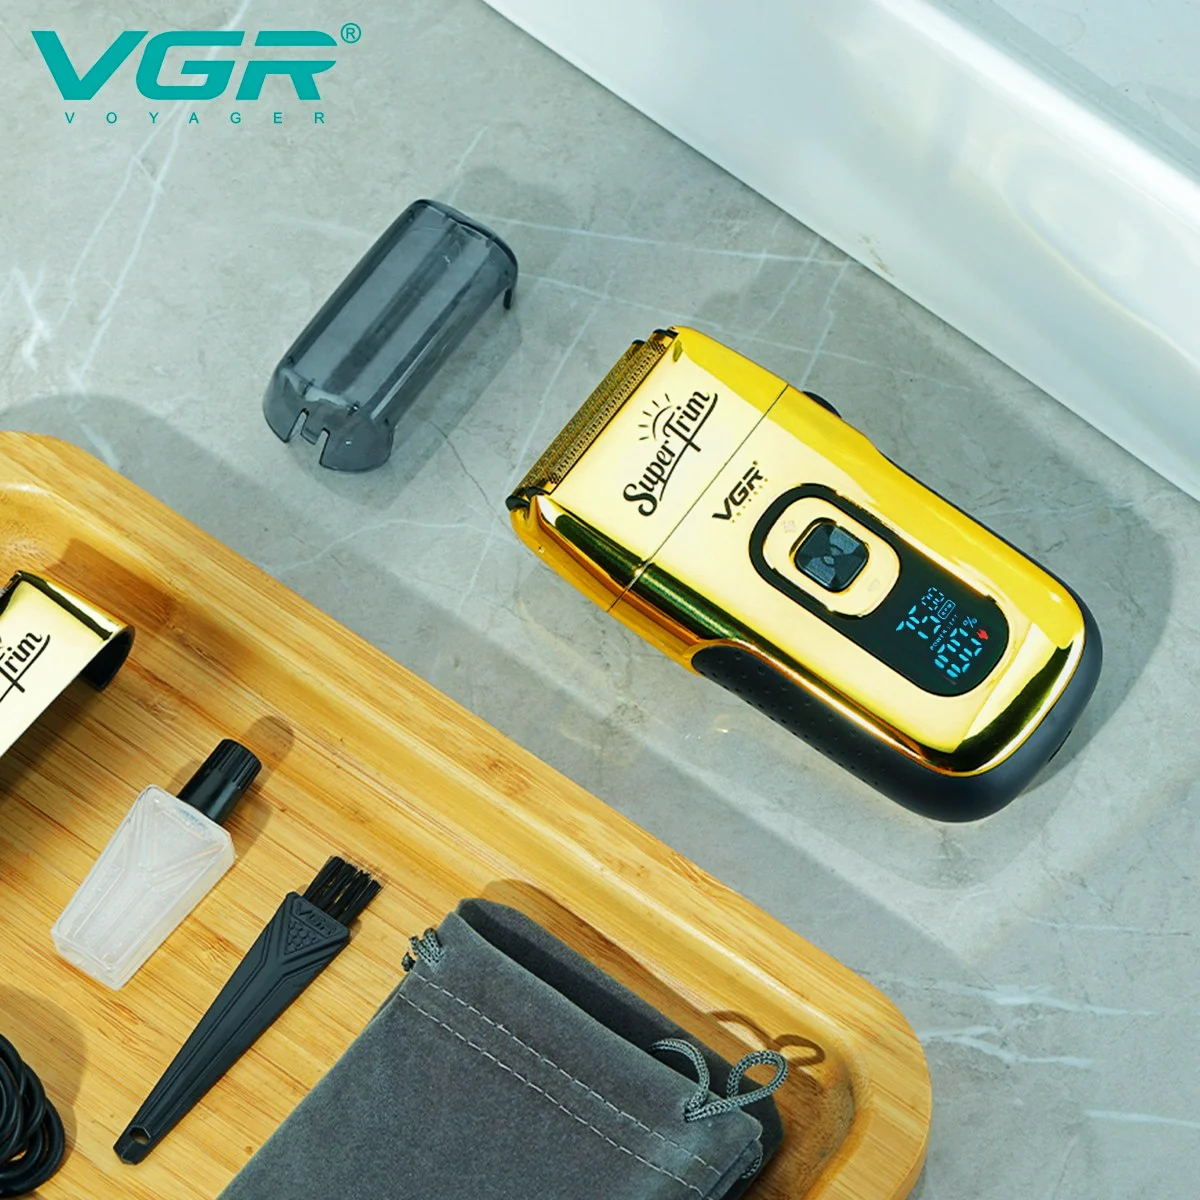 VGR Electric Shaver For Men Beard Shaver Hair Trimmer Electric Razor Metal Foil Shaver Beard Cutting Machine USB Charging V-332 enlarge